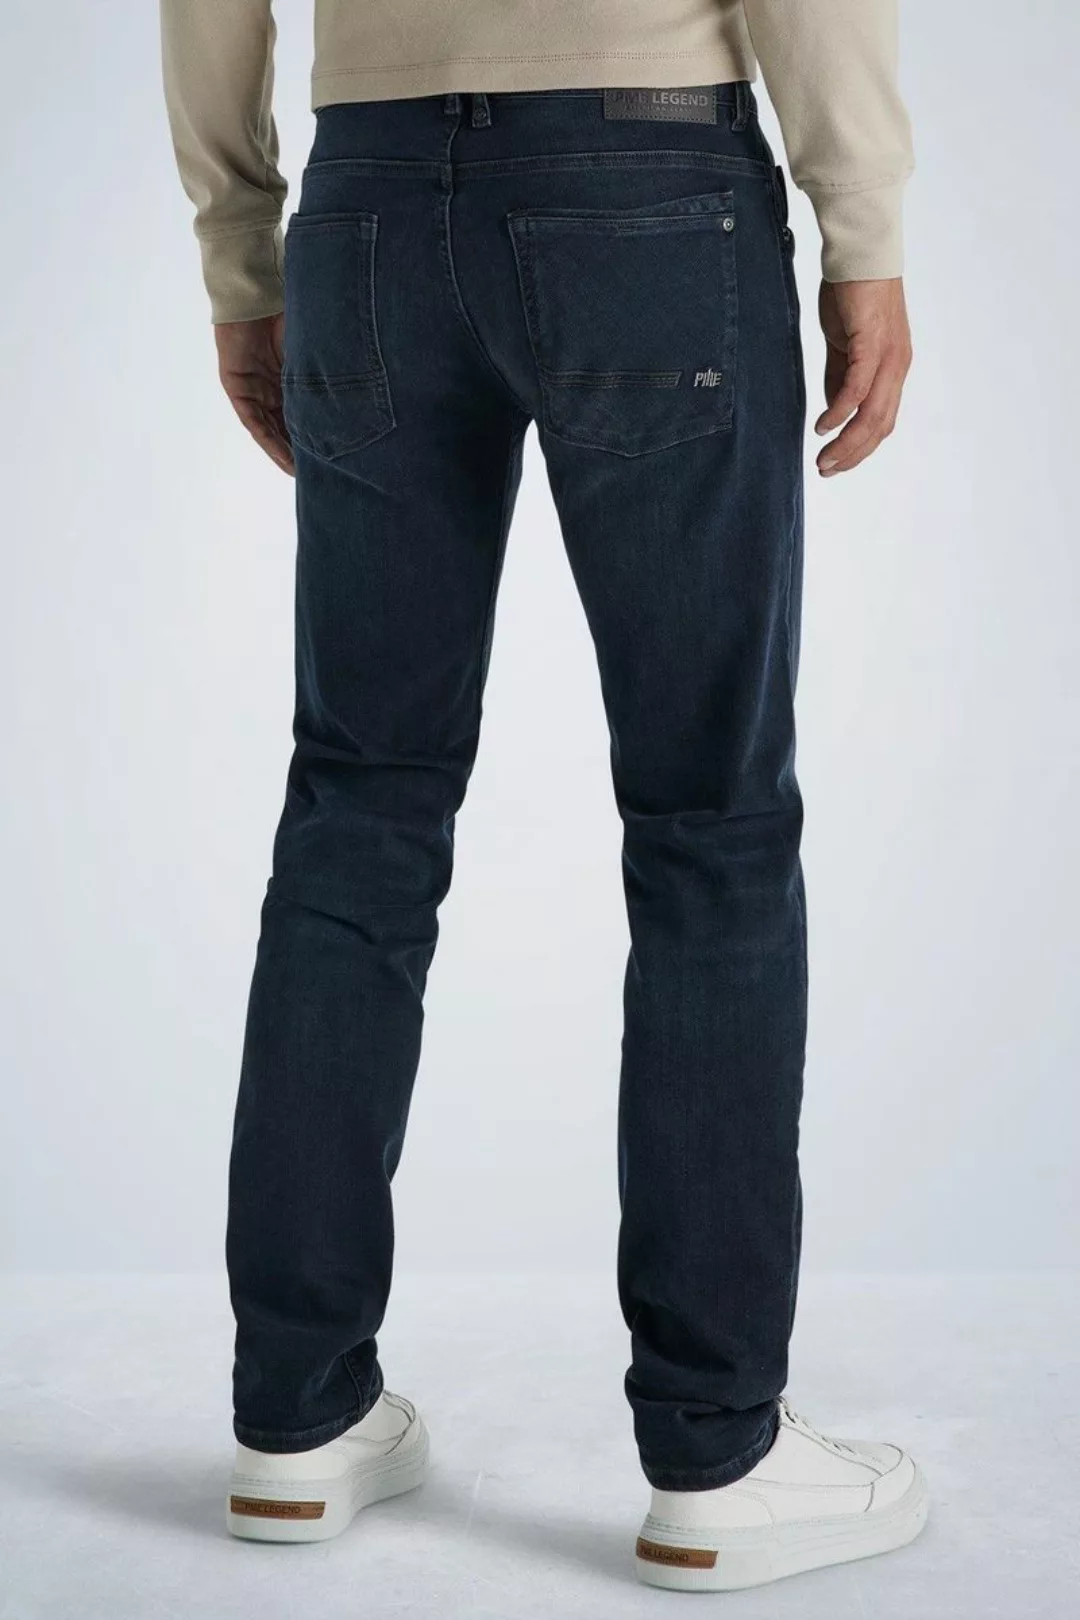 PME Legend Commander 3.0 Jeans Blau Schwarz - Größe W 33 - L 34 günstig online kaufen